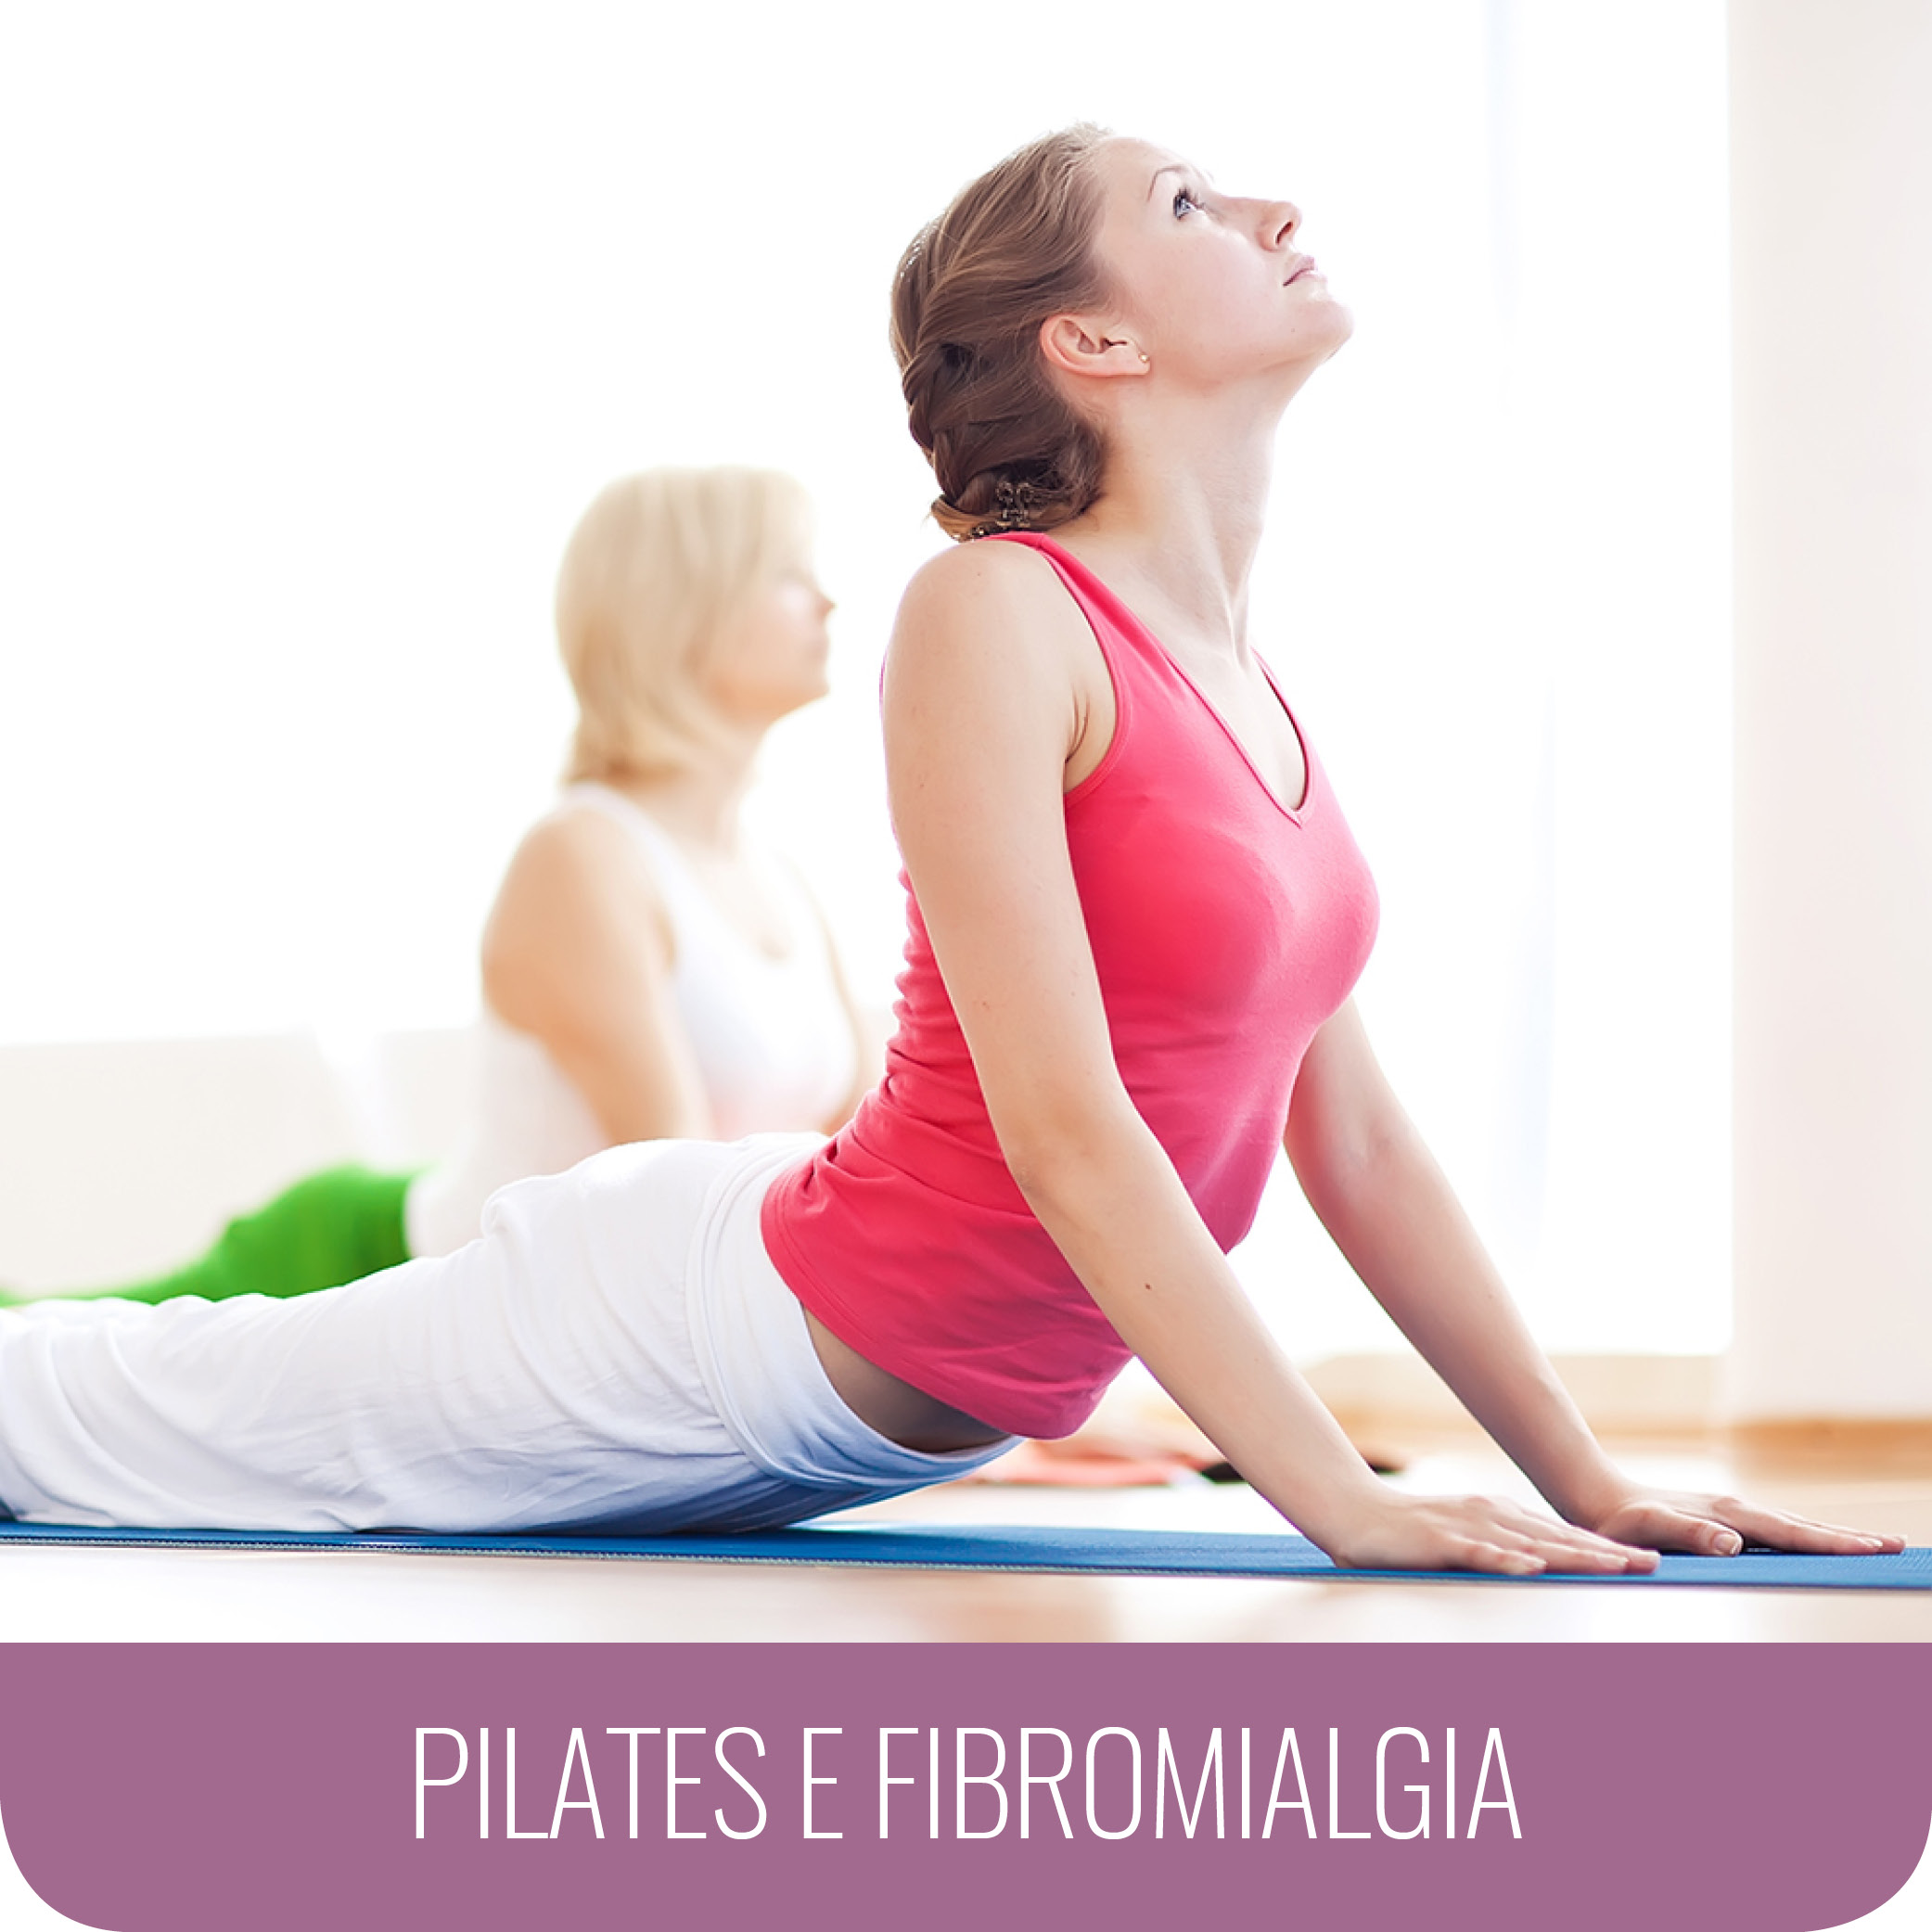 ppp pilates fibromialgia